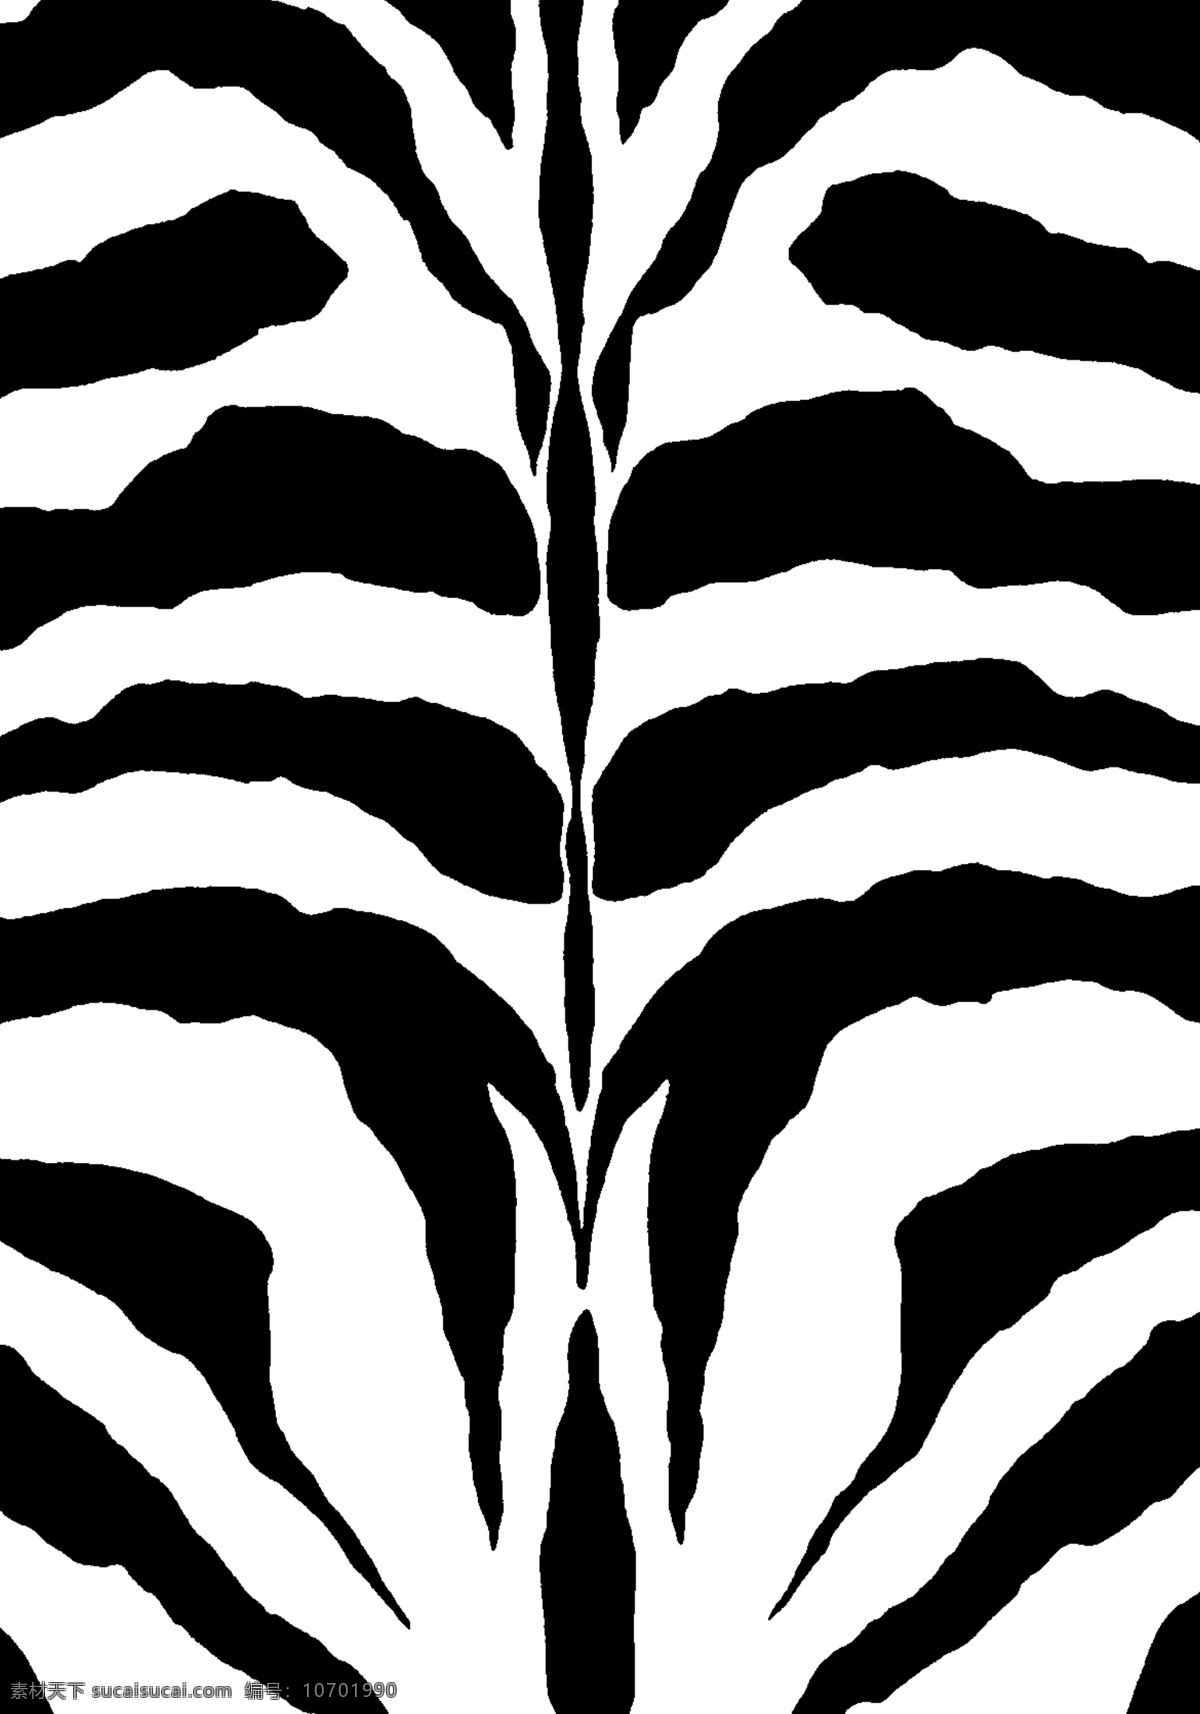 虎纹 黑白纹 动物 底纹 底纹边框 背景底纹 动物纹 老虎 文化艺术